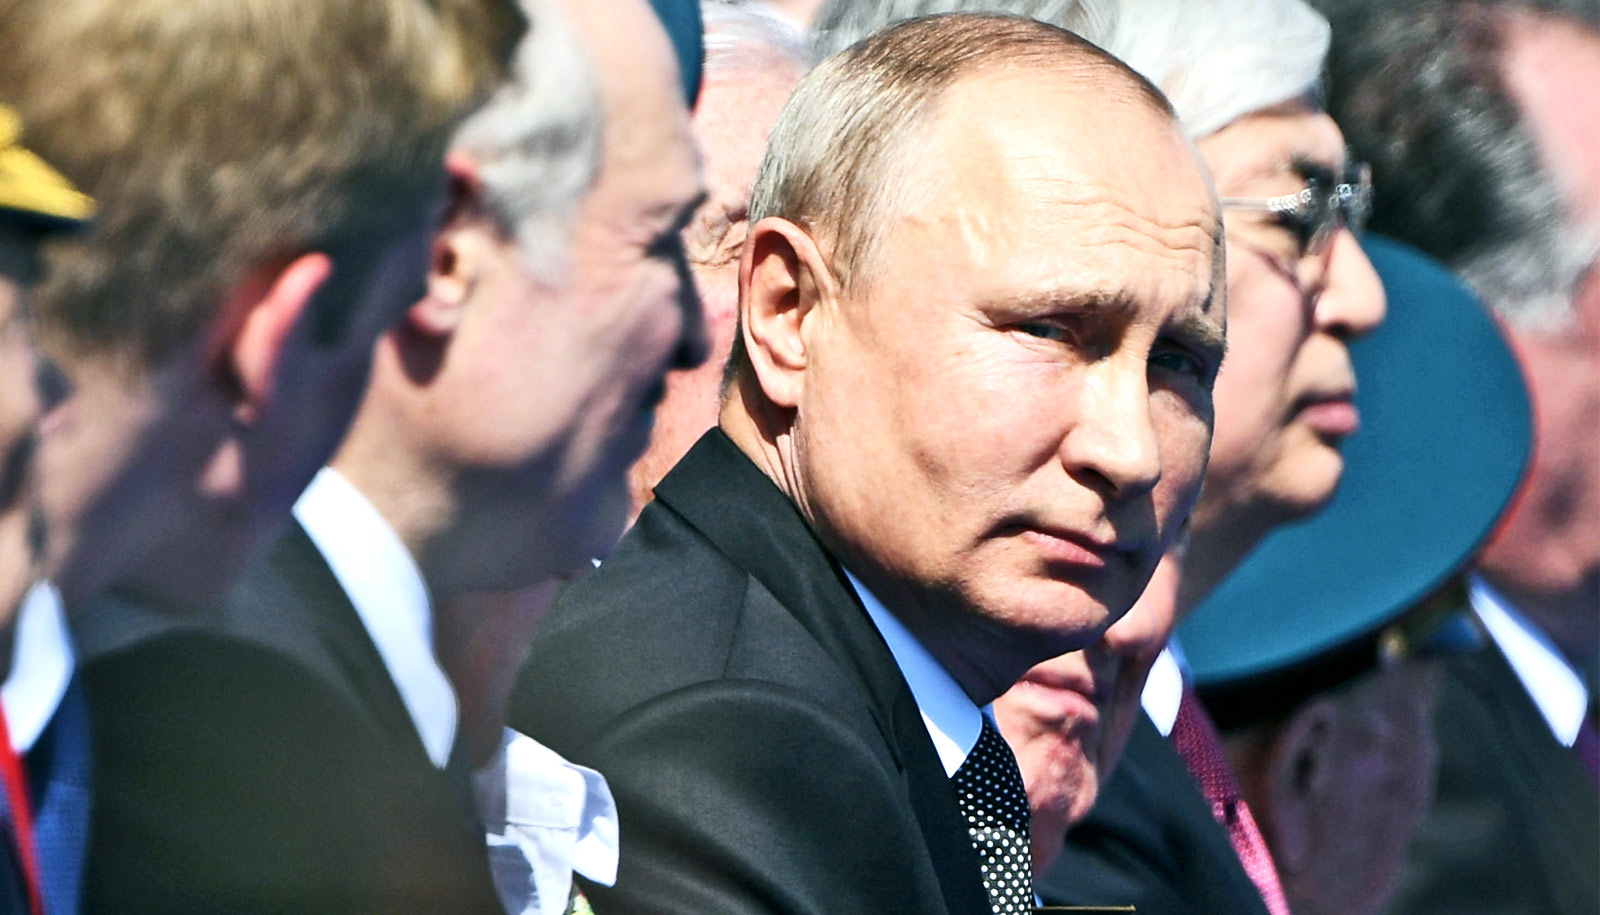 Rusiya və Ermənistan arasında gizli gərginlik – Putin Arutyunyanı niyə qəbul etmir?